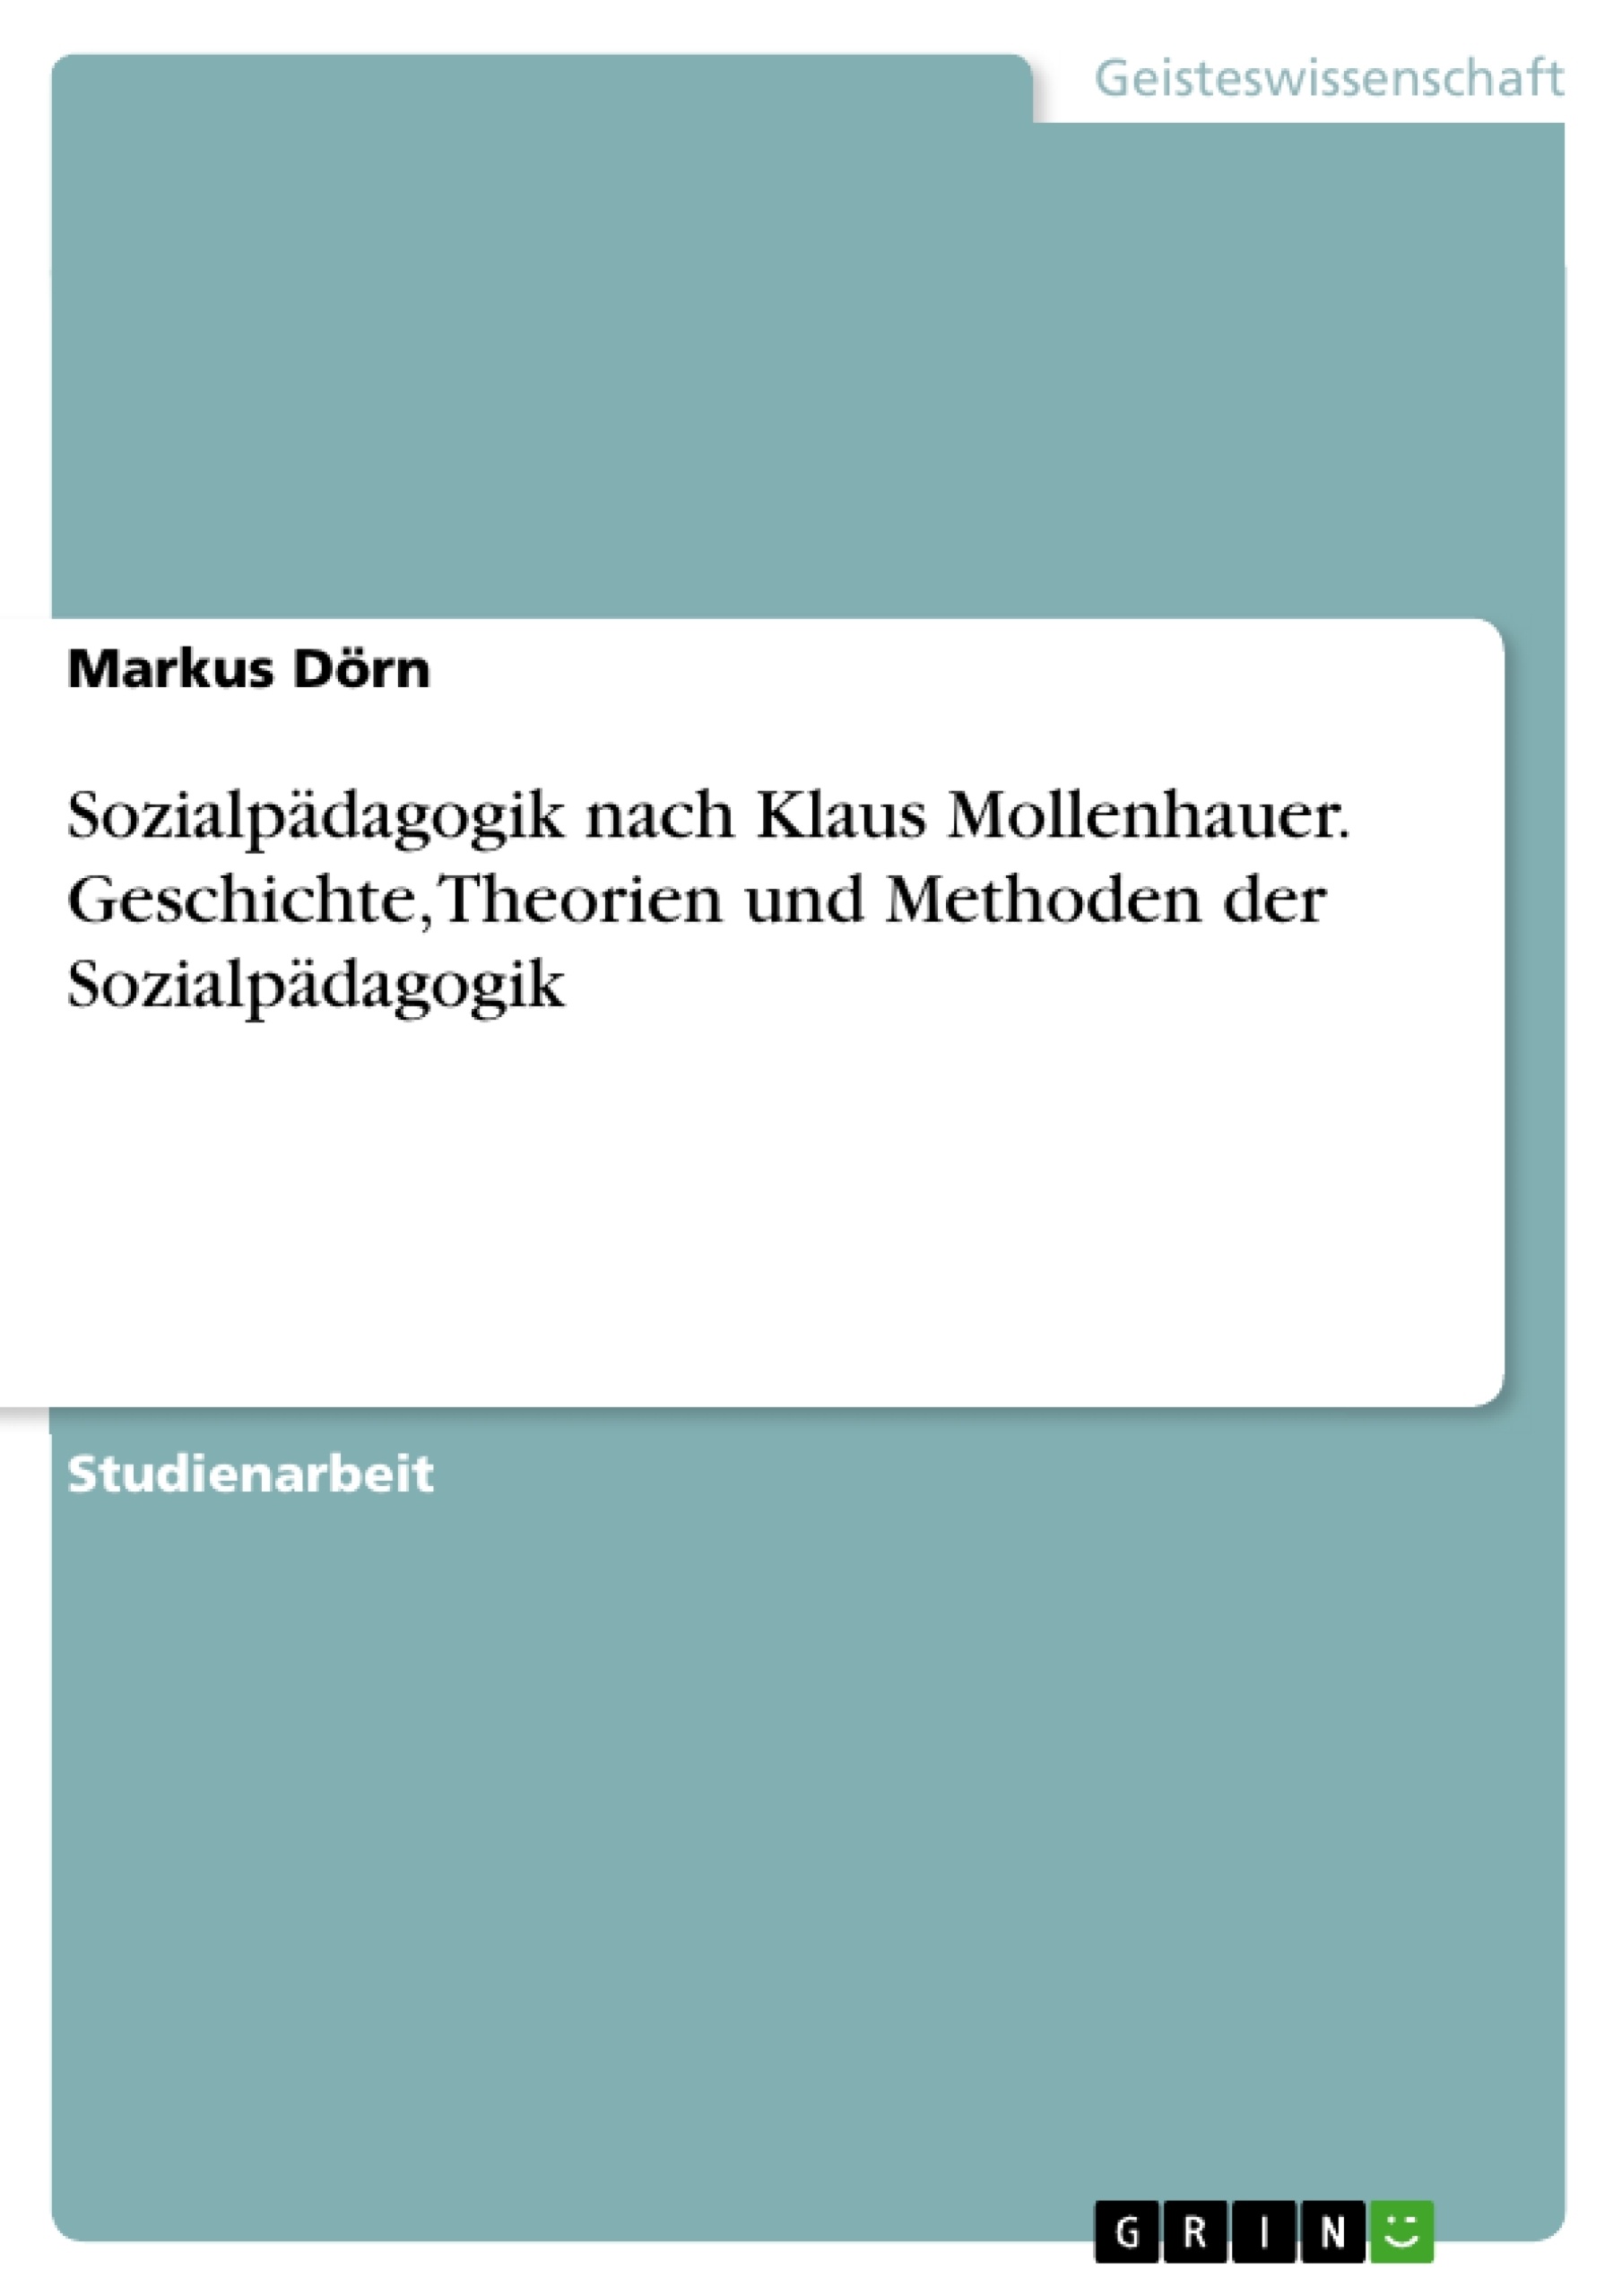 Titel: Sozialpädagogik nach Klaus Mollenhauer. Geschichte, Theorien und Methoden der Sozialpädagogik